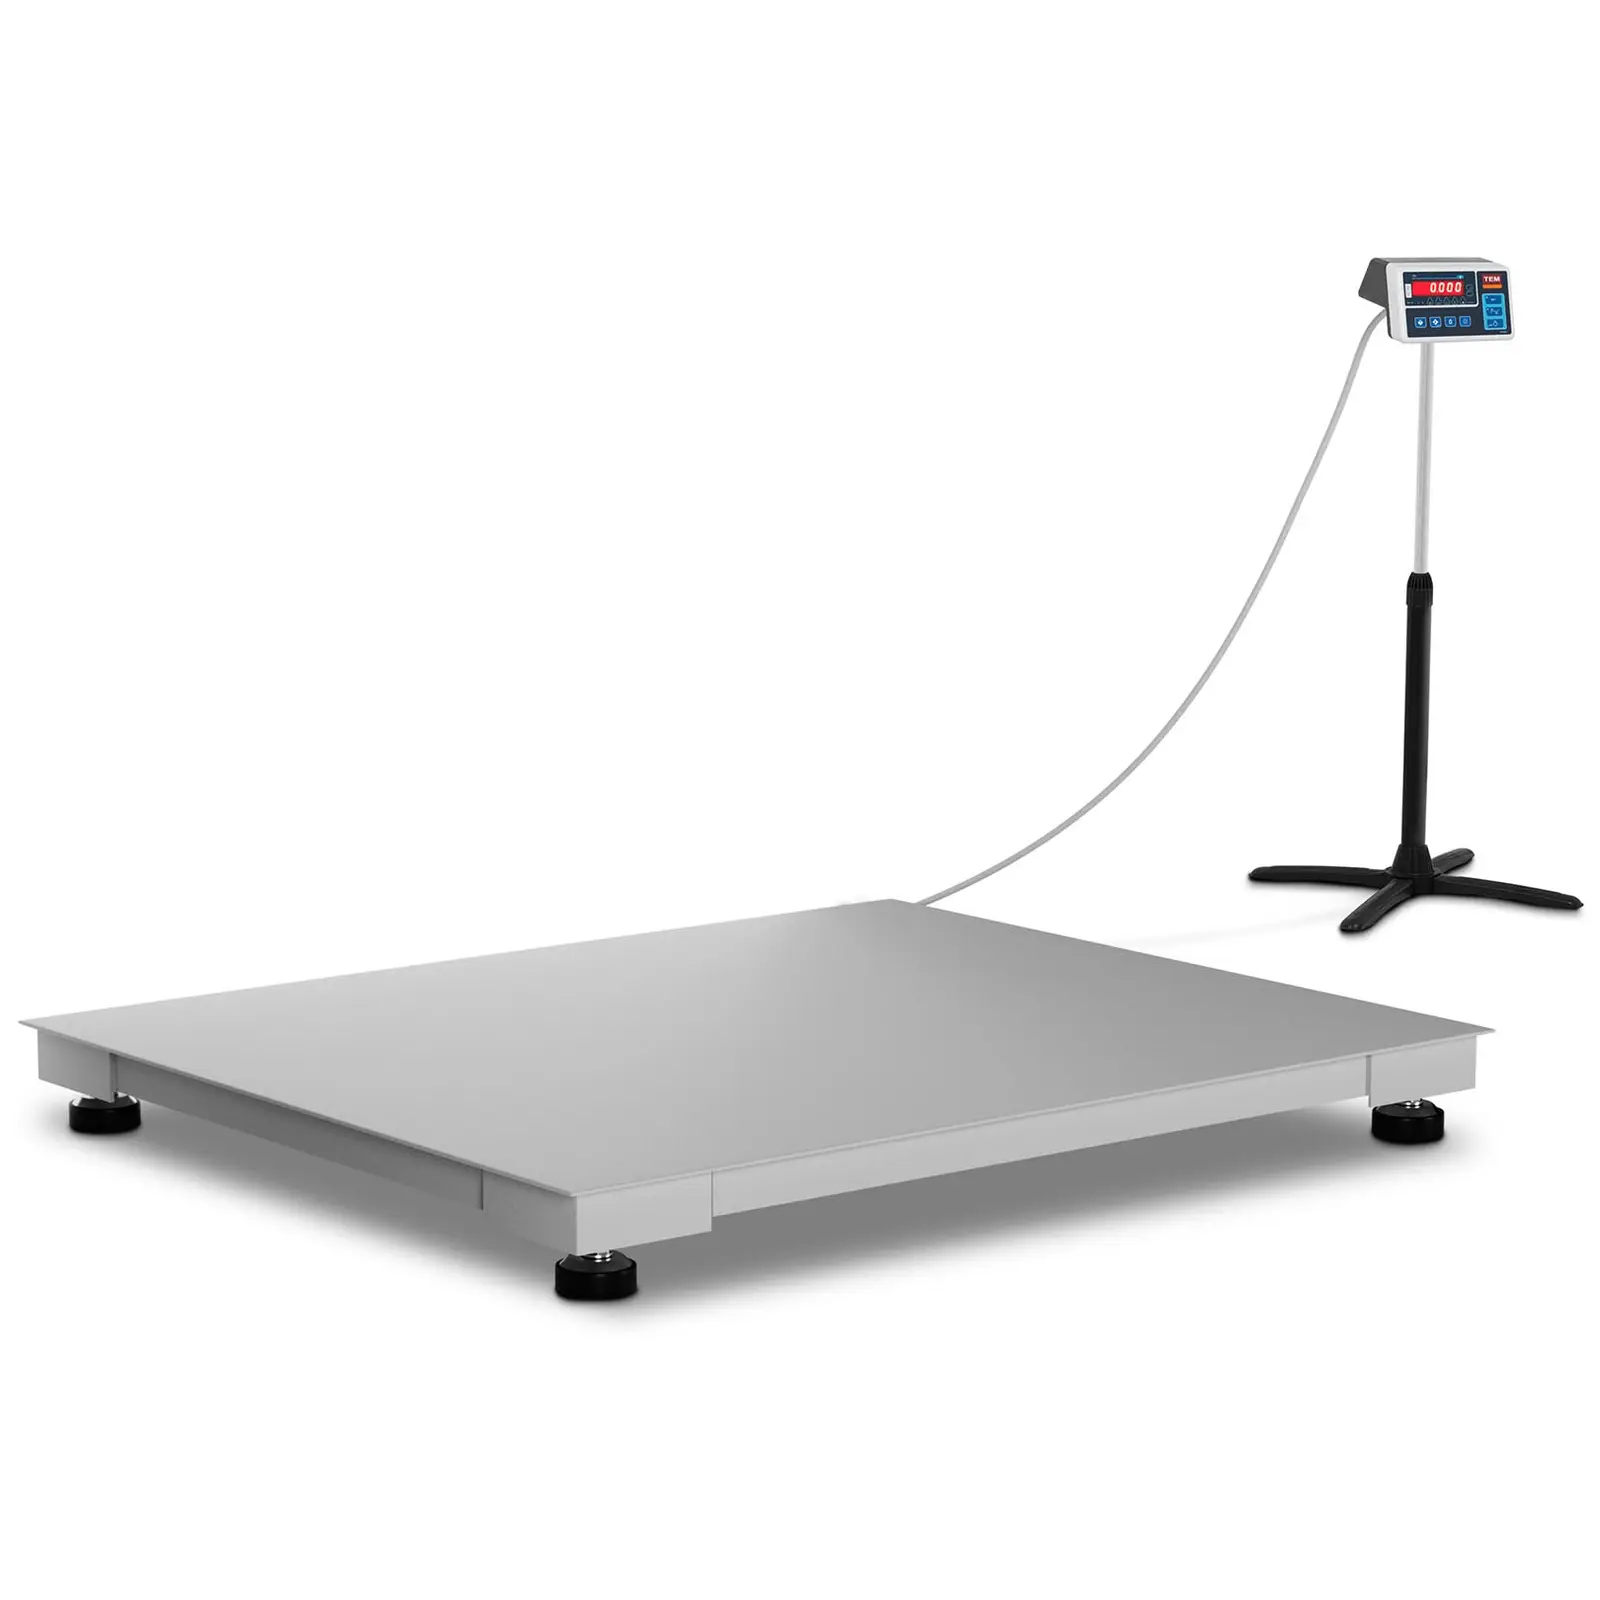 Podlahová váha - cejchovaná - 600 kg / 200 g - 100 x 120 cm - LED